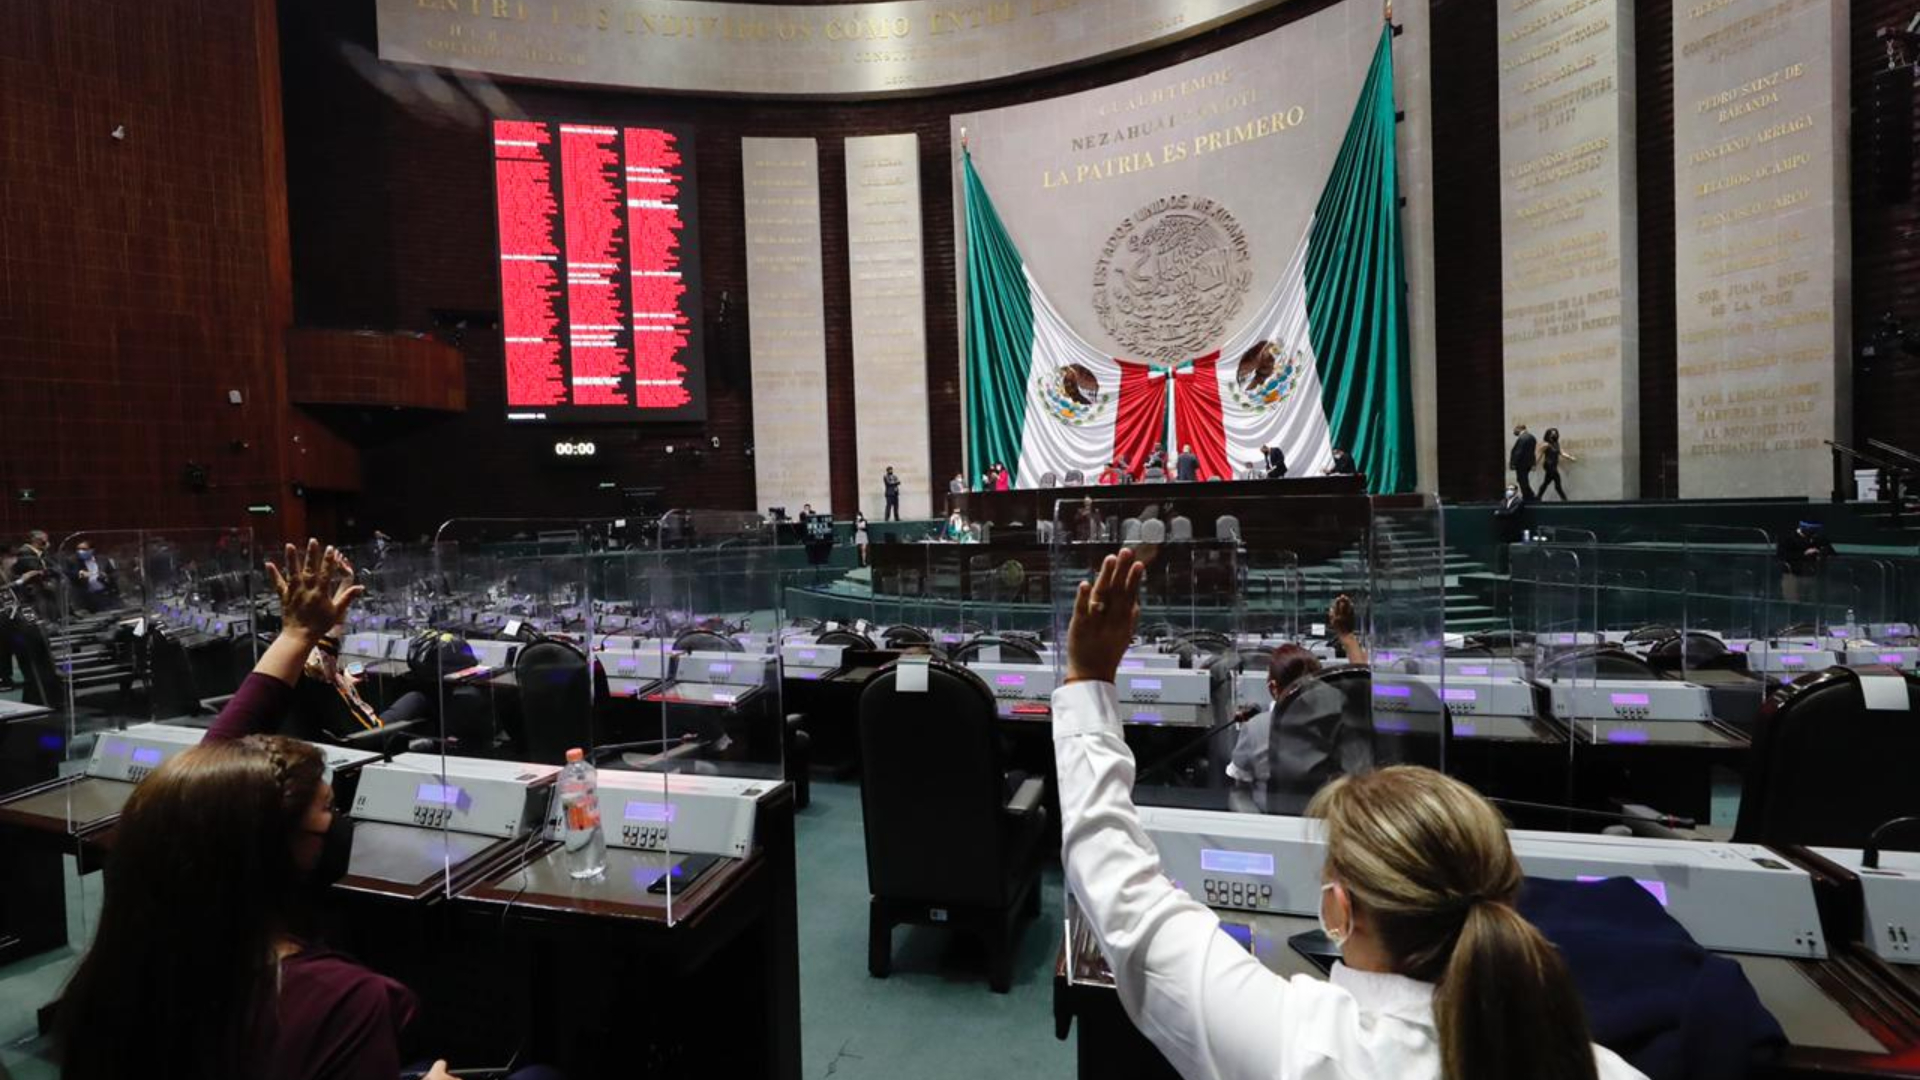 El sondeo de Reforma también reveló que el 63% de los encuestados aprueba la gestión de López Obrador, presidente desde diciembre de 2018, mientras que el 33% la desaprueba. (Foto: Cortesía Cámara de Diputados)